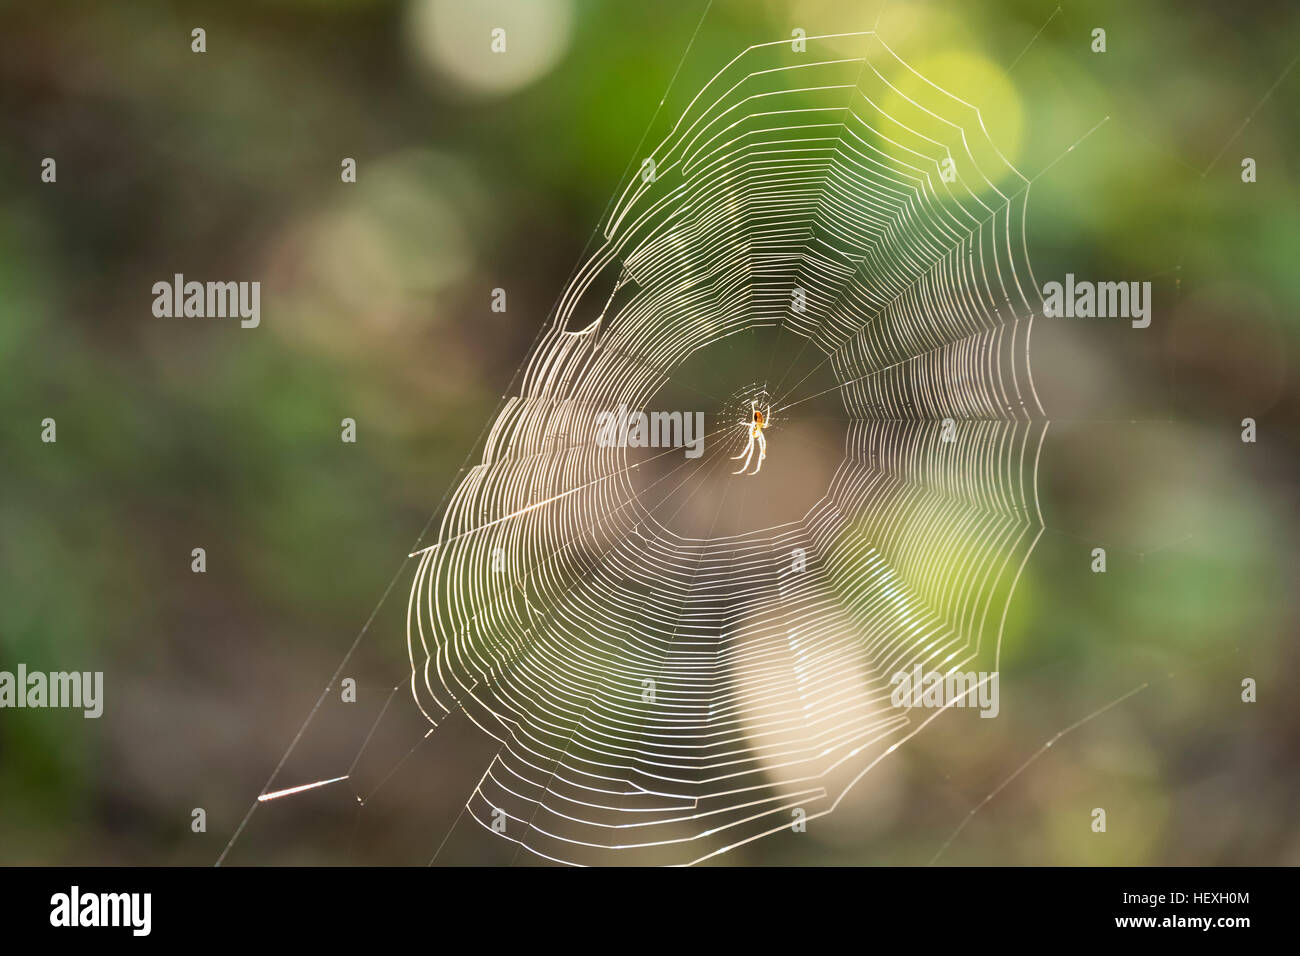 Spinne im Netz der Spinne zu überqueren Stockfoto